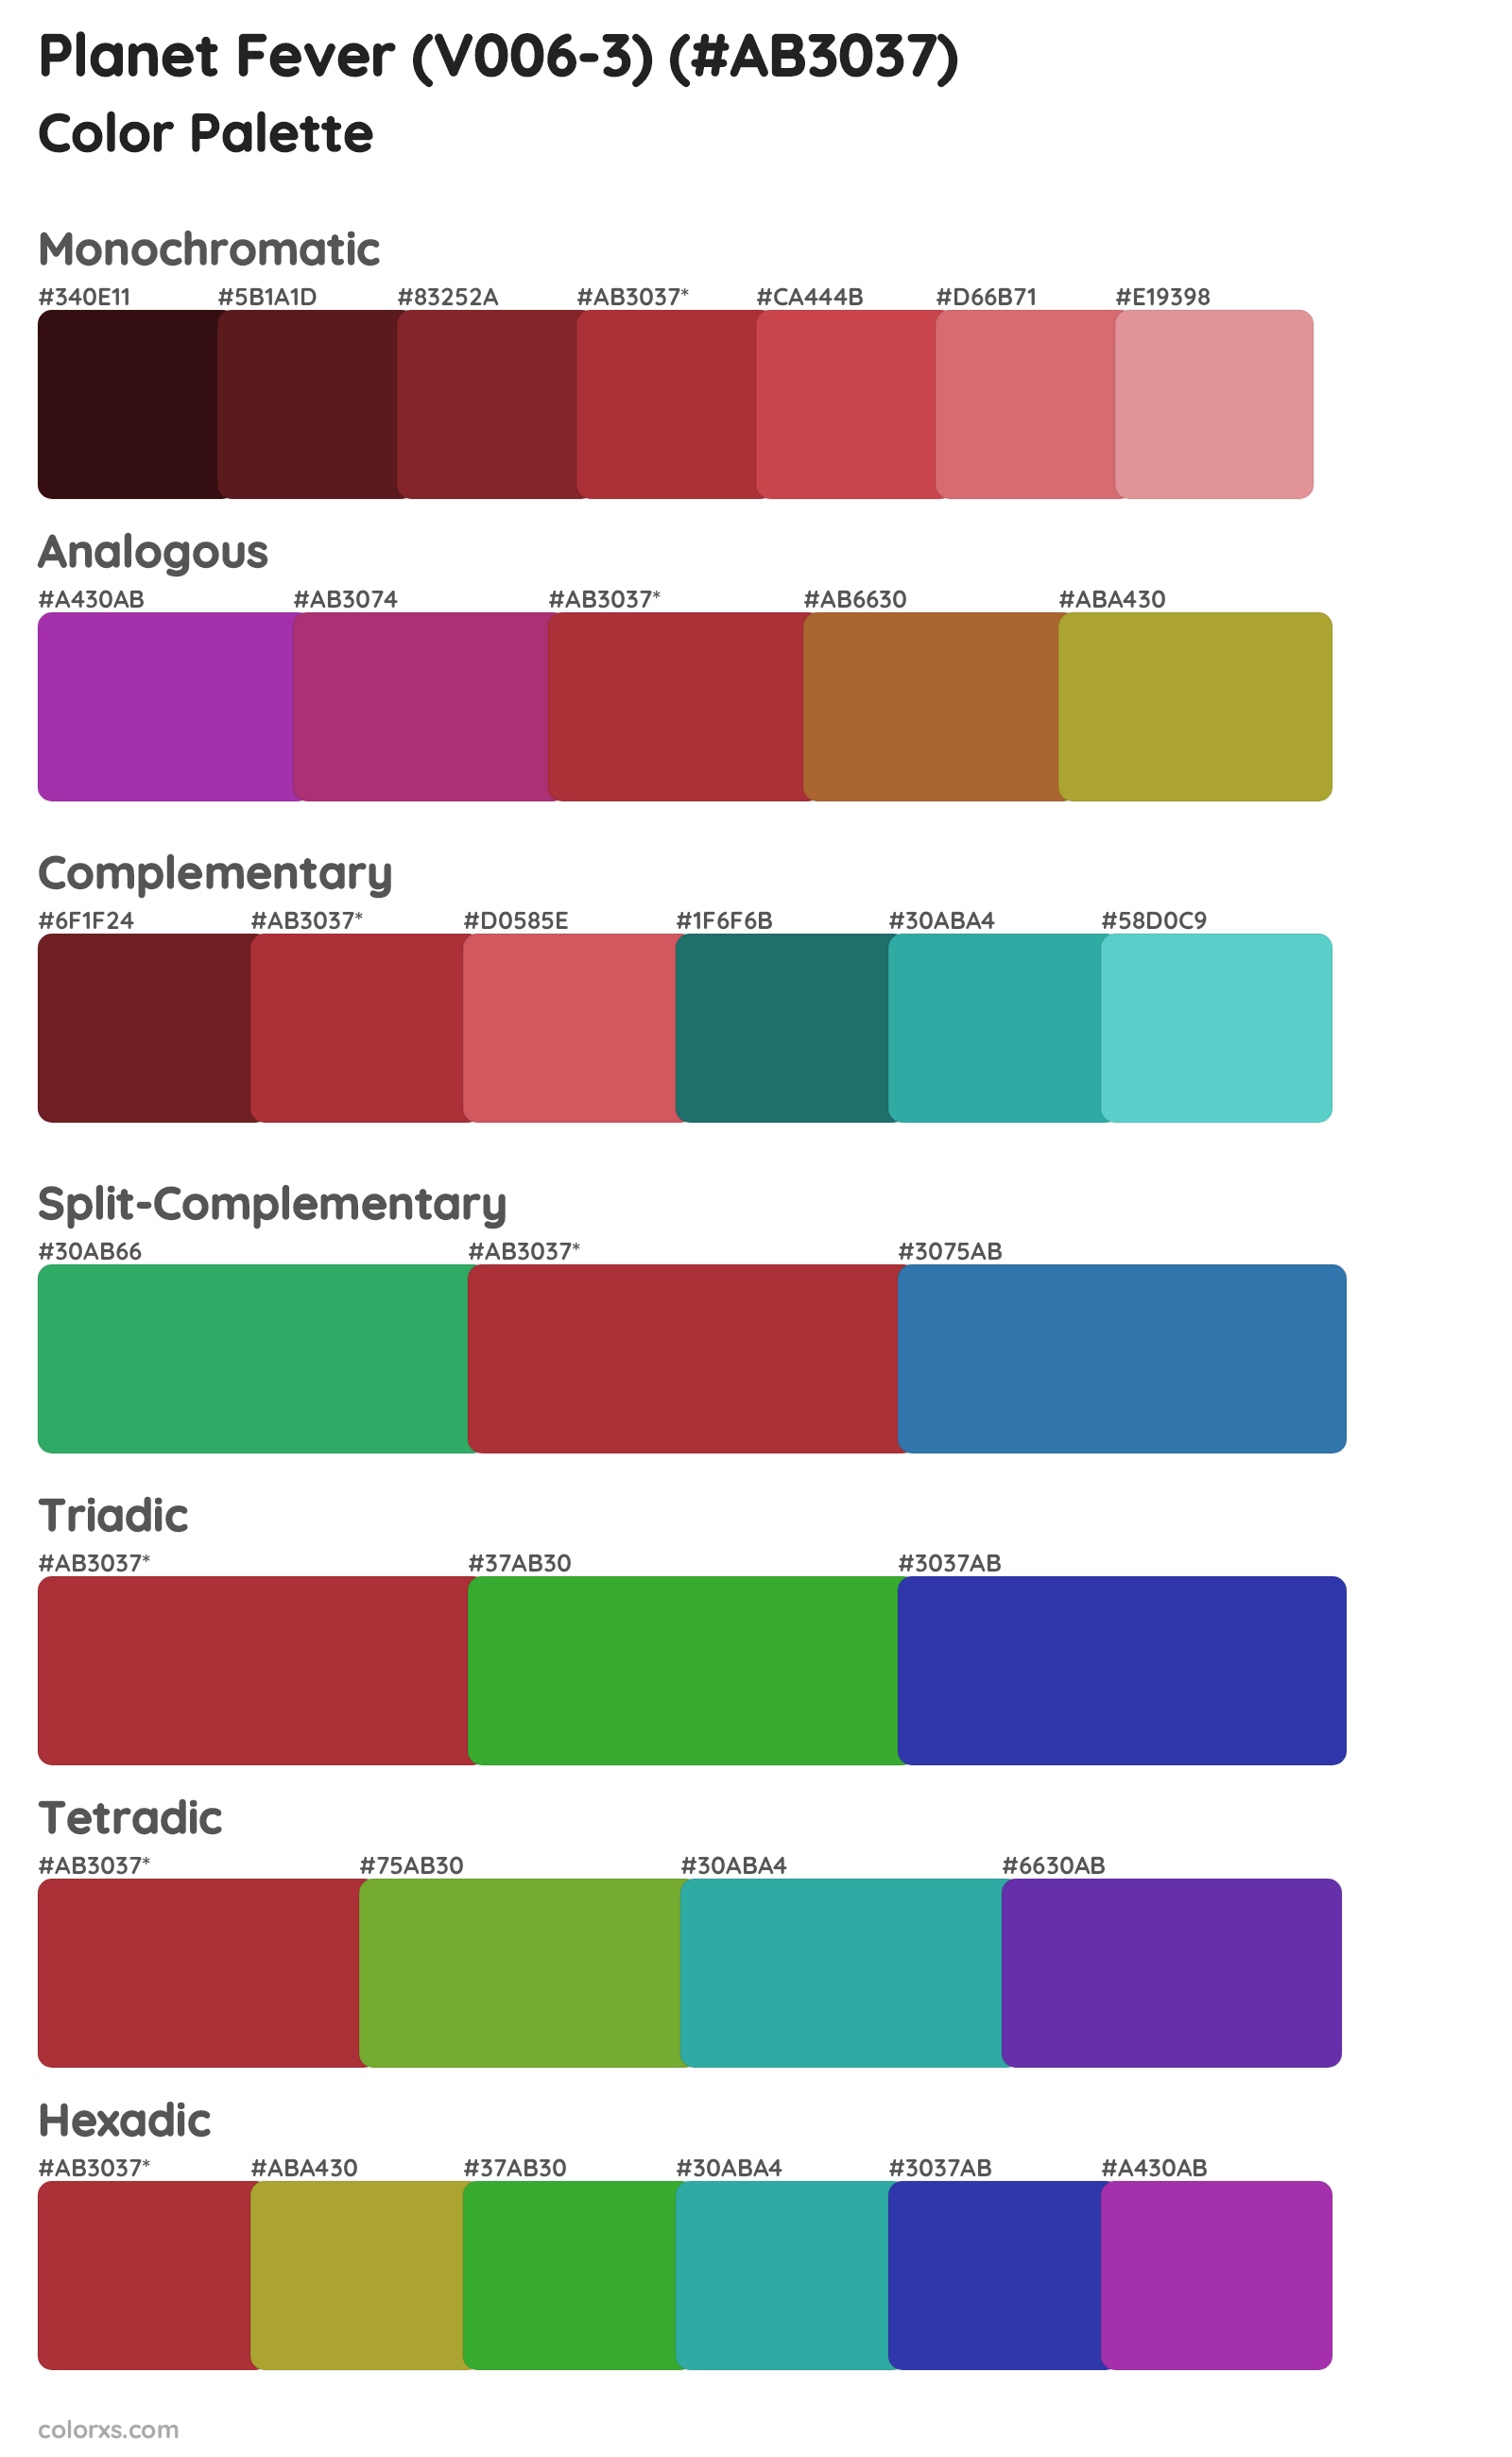 Planet Fever (V006-3) Color Scheme Palettes